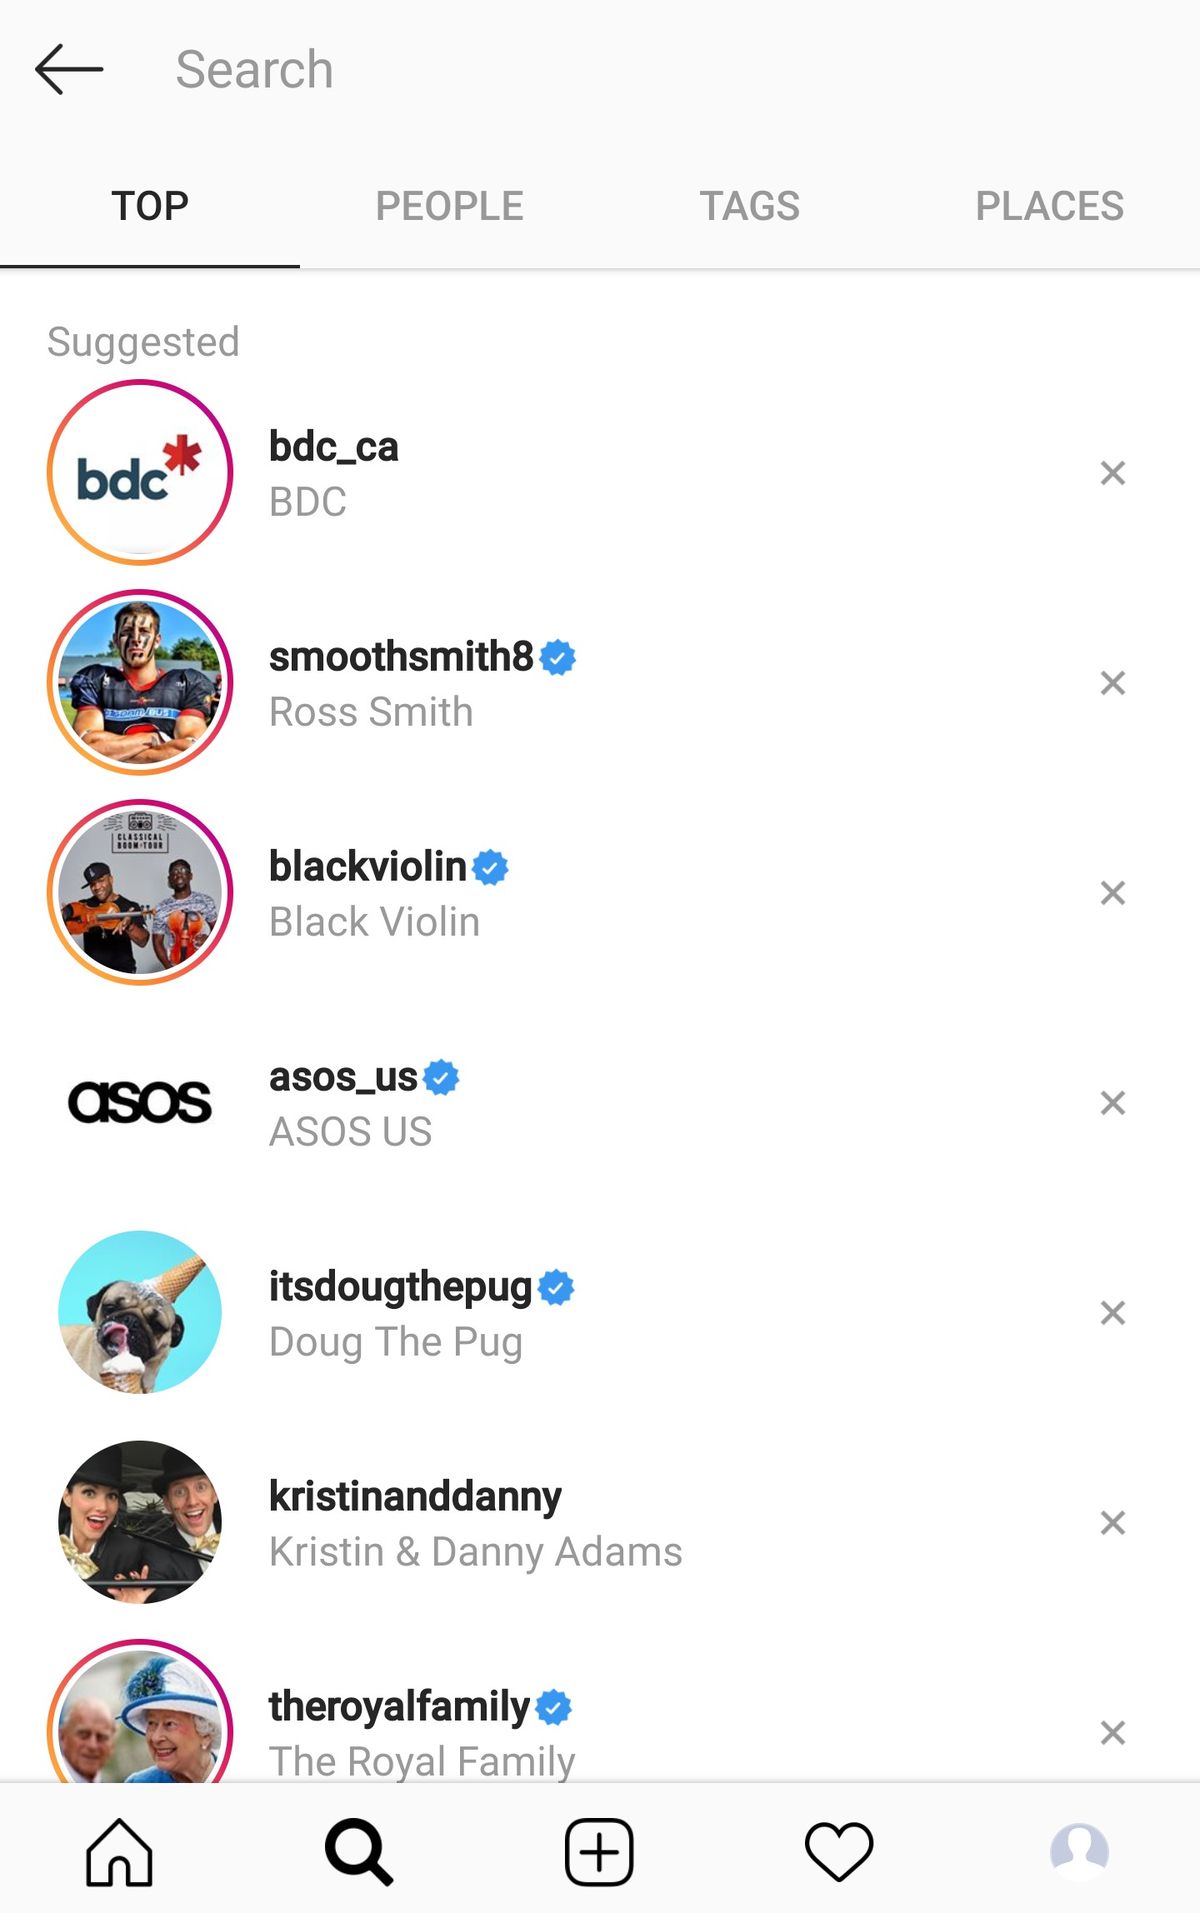 Αναζήτηση & Εξερεύνηση Instagram: Πώς μπορώ να κάνω αναζήτηση στο Instagram;